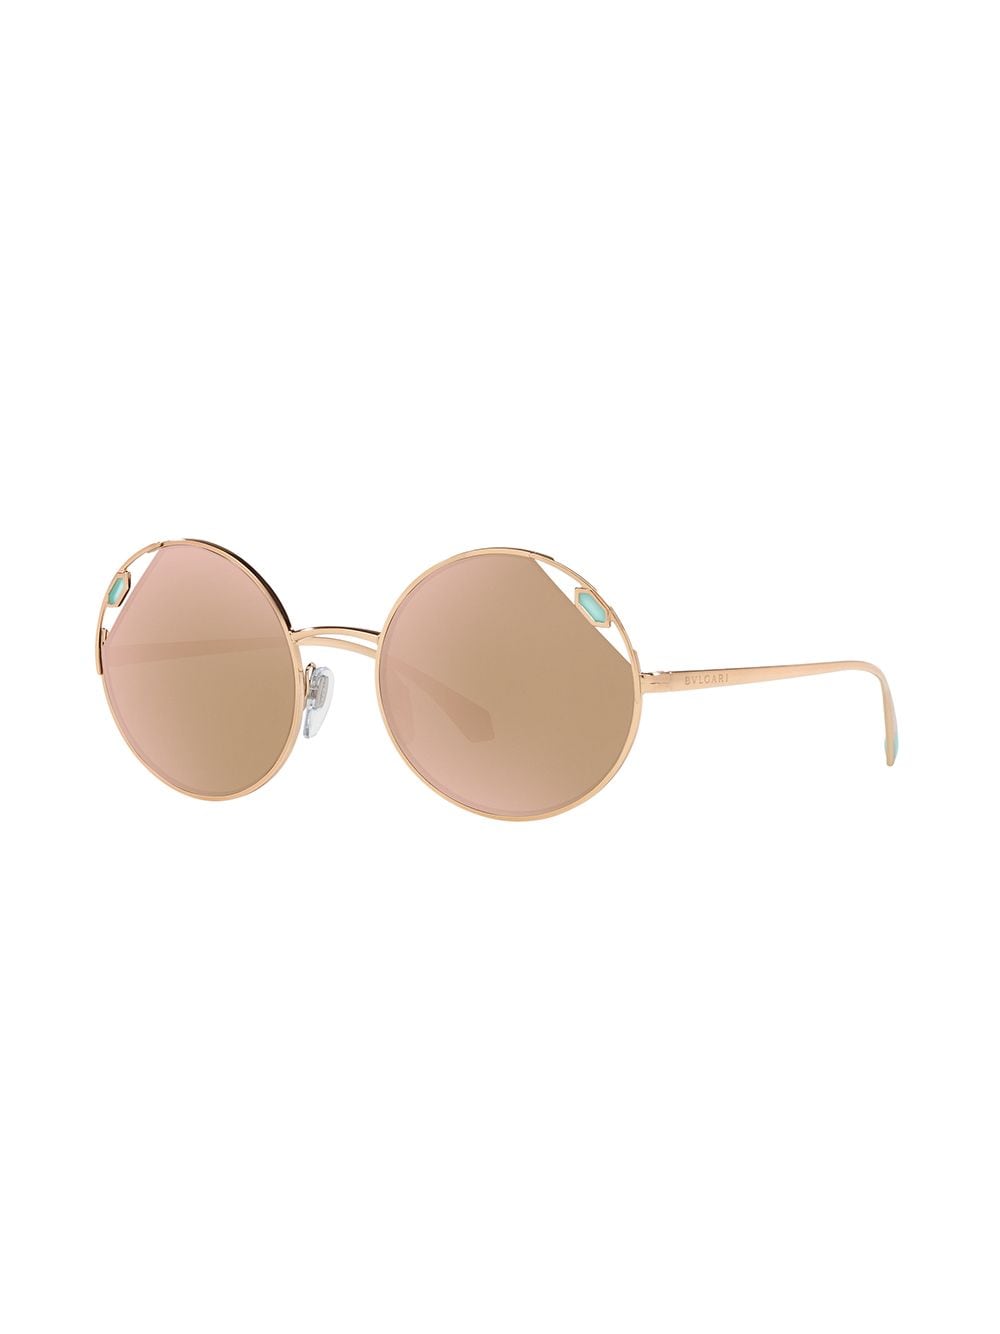 Image 2 of Bvlgari stone-embellished round sunglasses